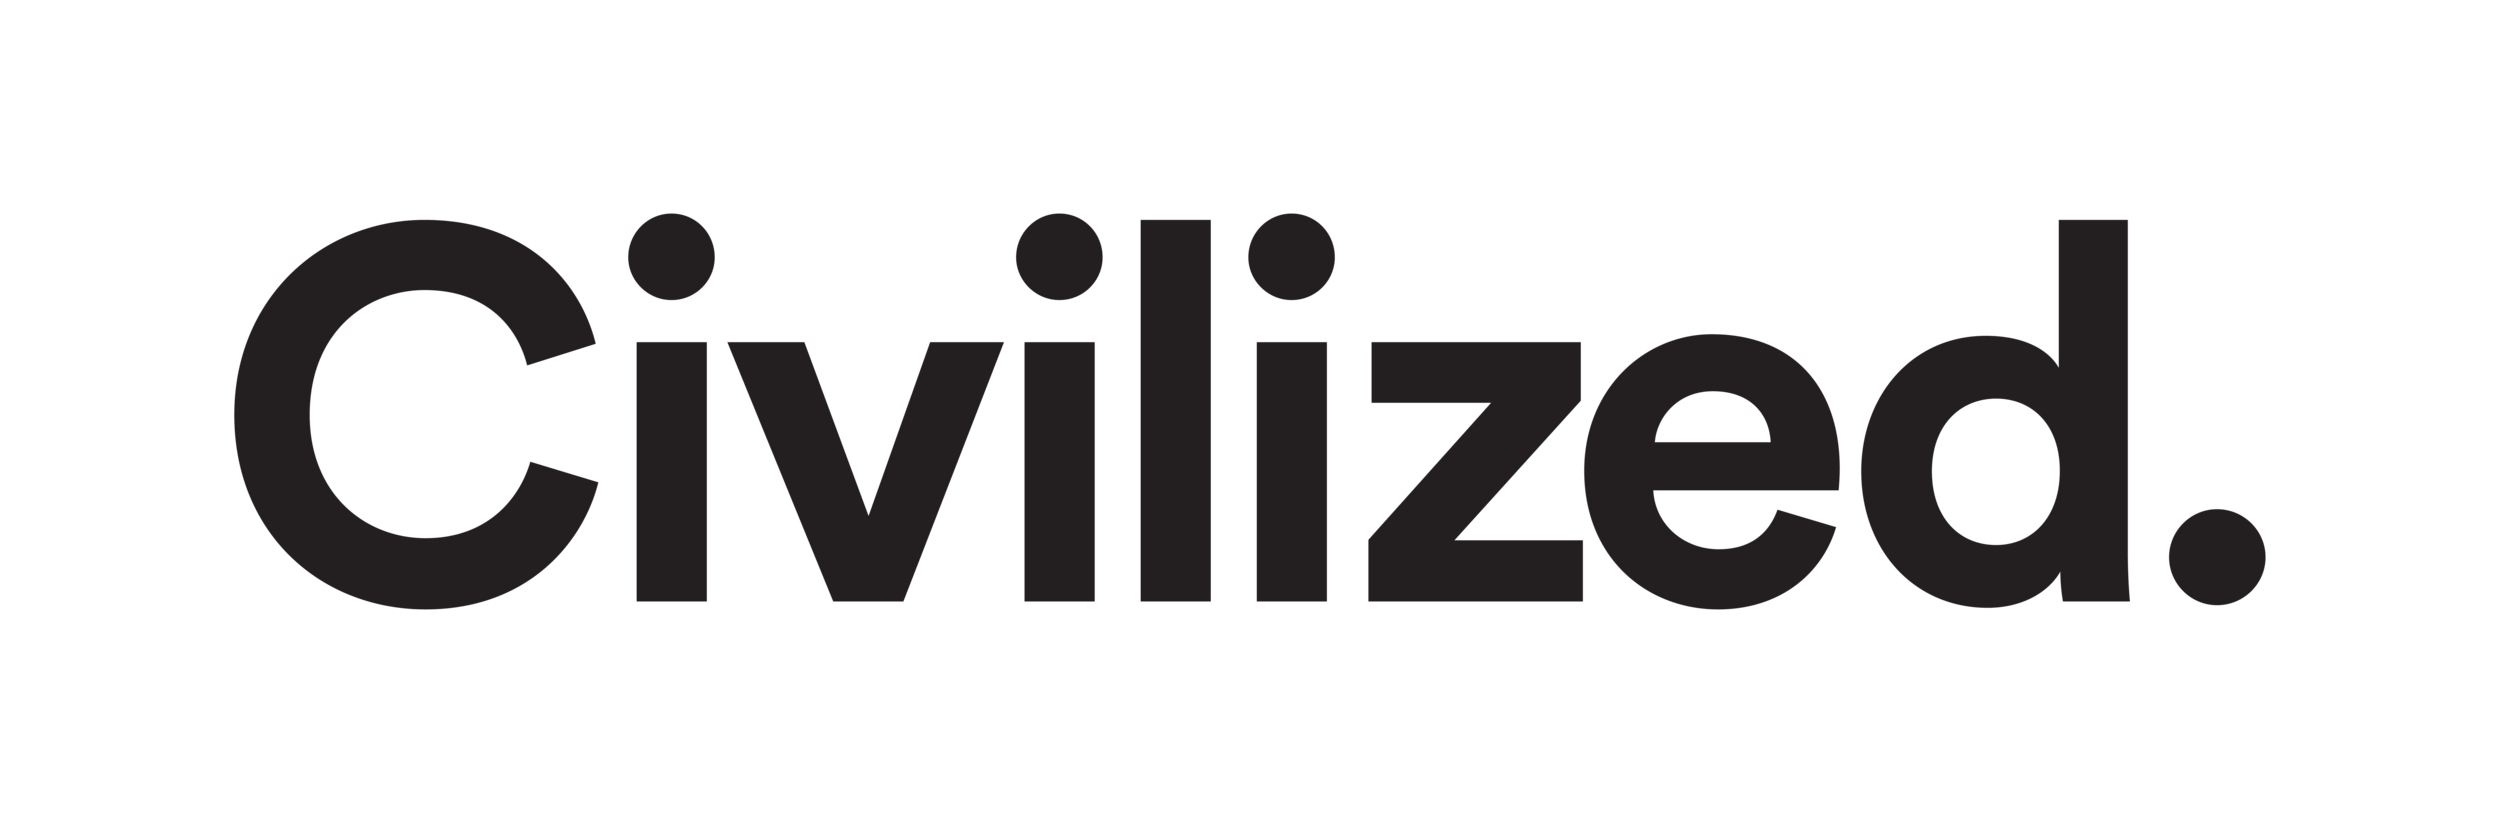 Civilized Logo.png